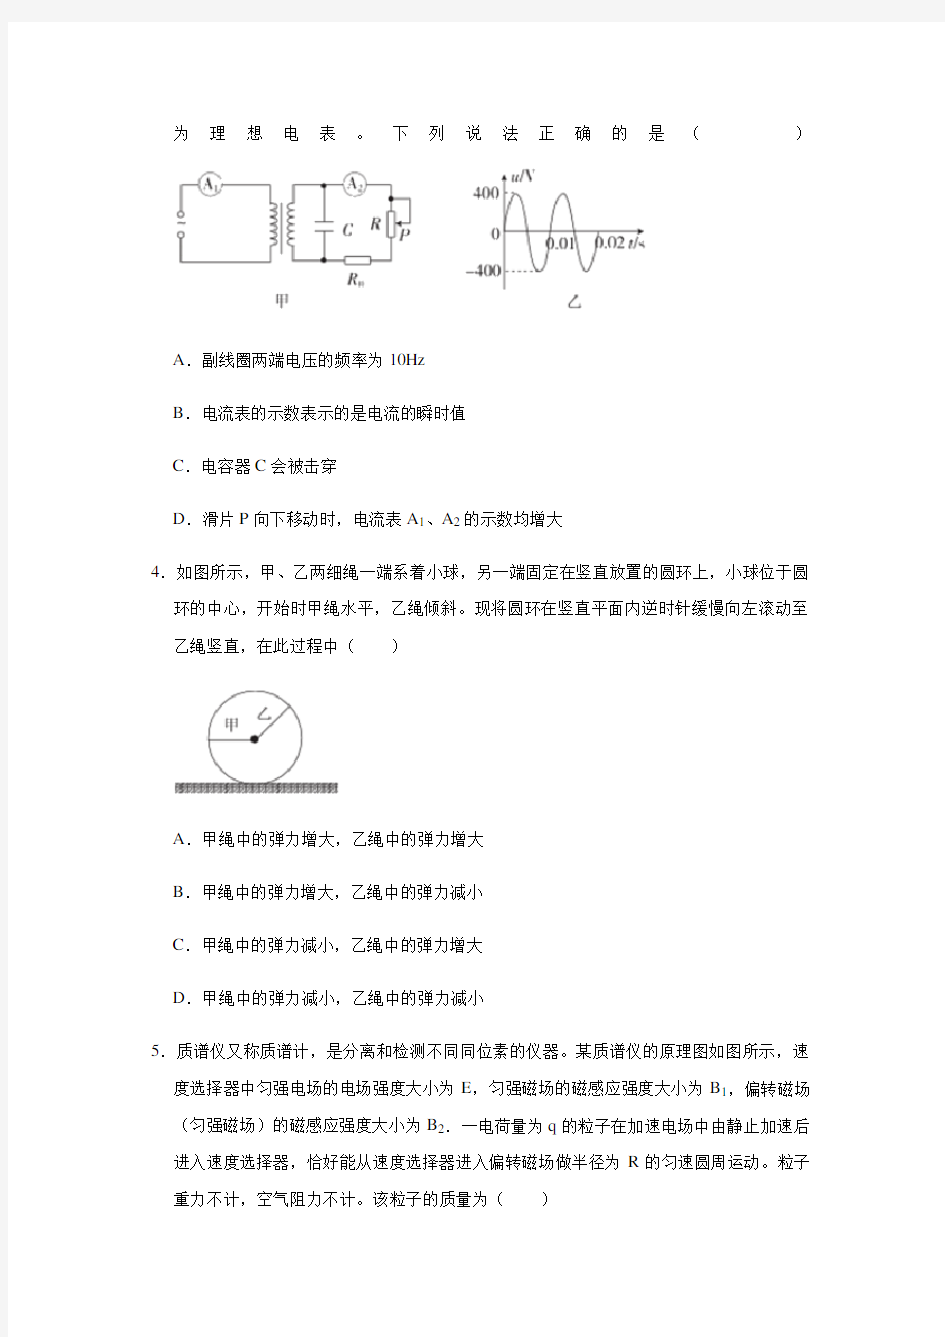 2020年湖南省高考物理模拟理综物理考试试卷(3月份)(解析版)